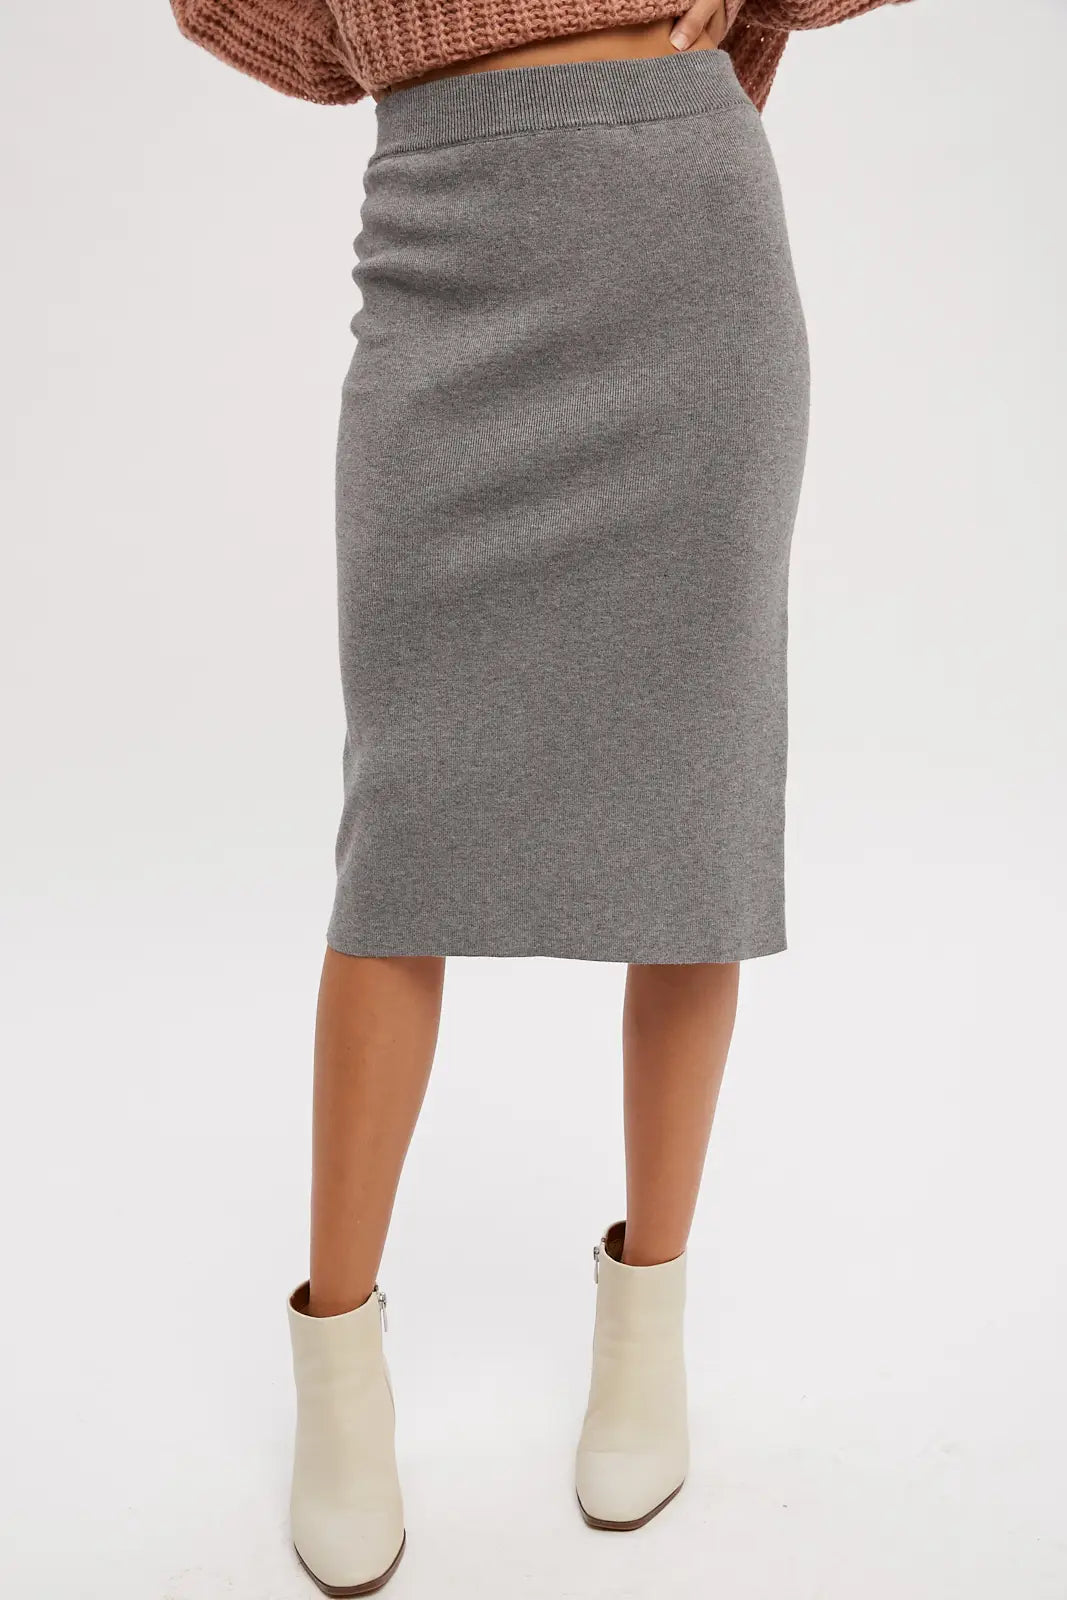 Gabby's Grey Midi Sweater Skirt